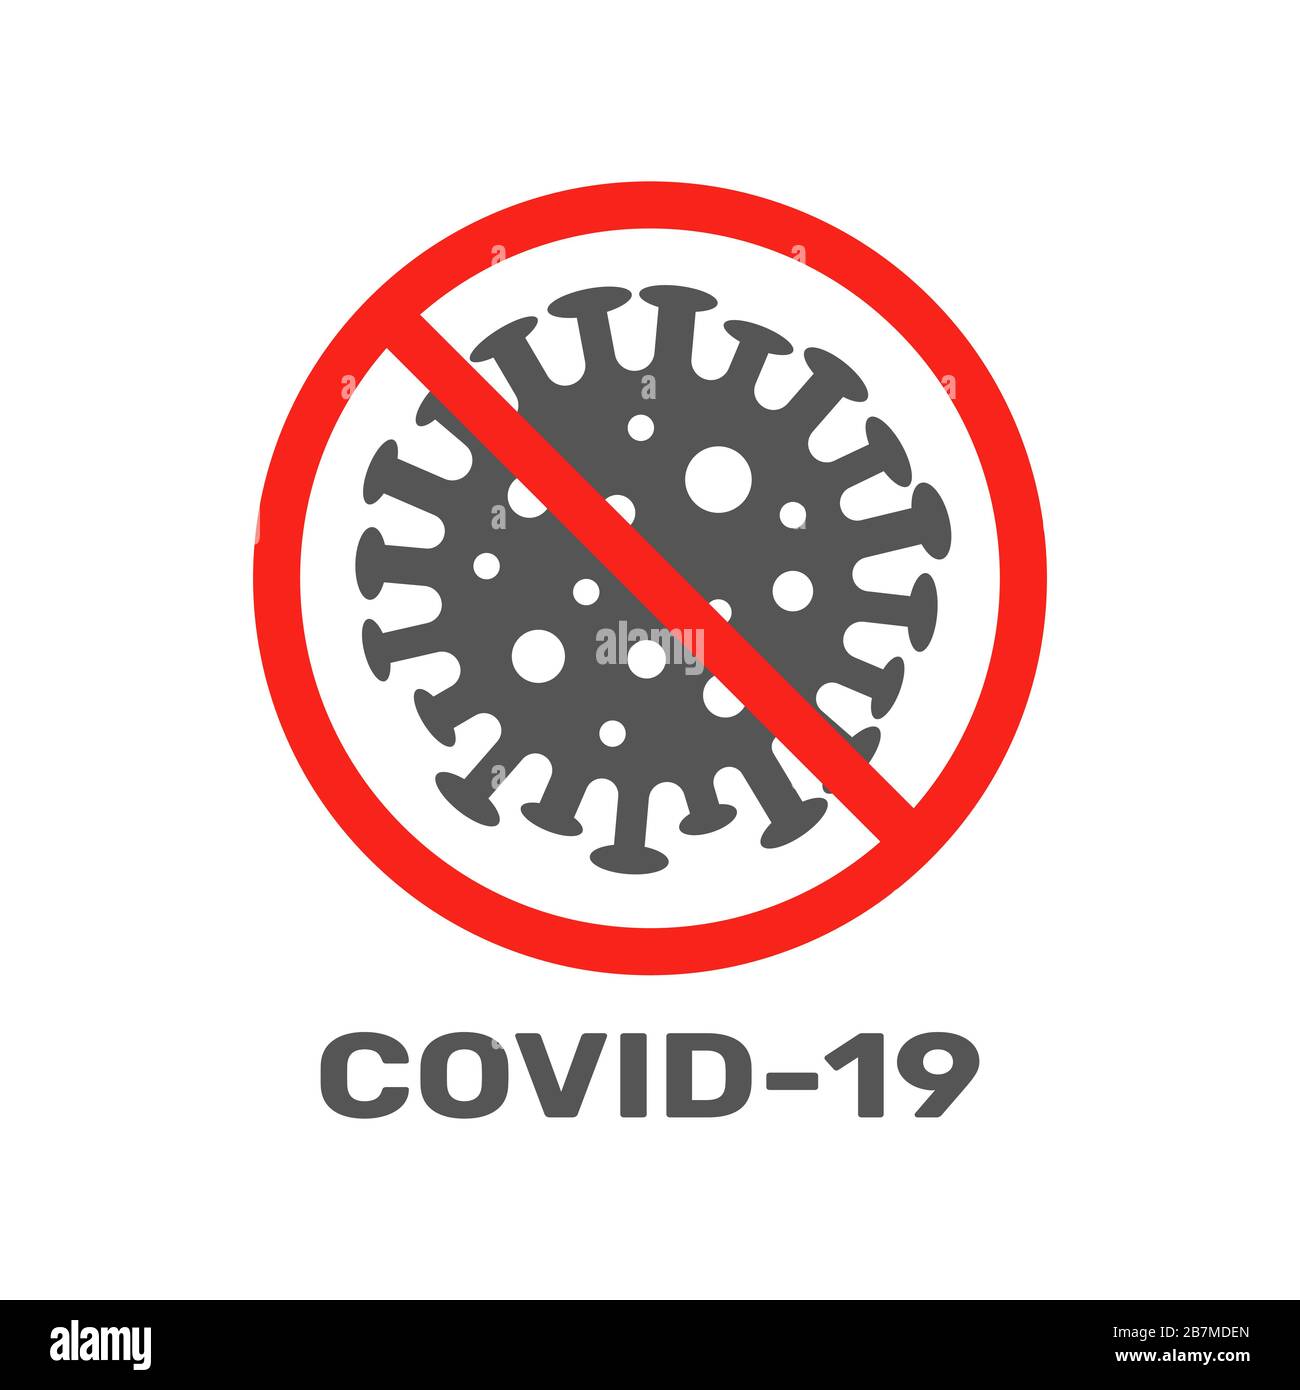 Firme con precaución el coronavirus. Detenga el coronavirus. Peligro de coronavirus y riesgo para la salud pública enfermedad y brote de gripe. Concepto médico pandémico con Ilustración del Vector